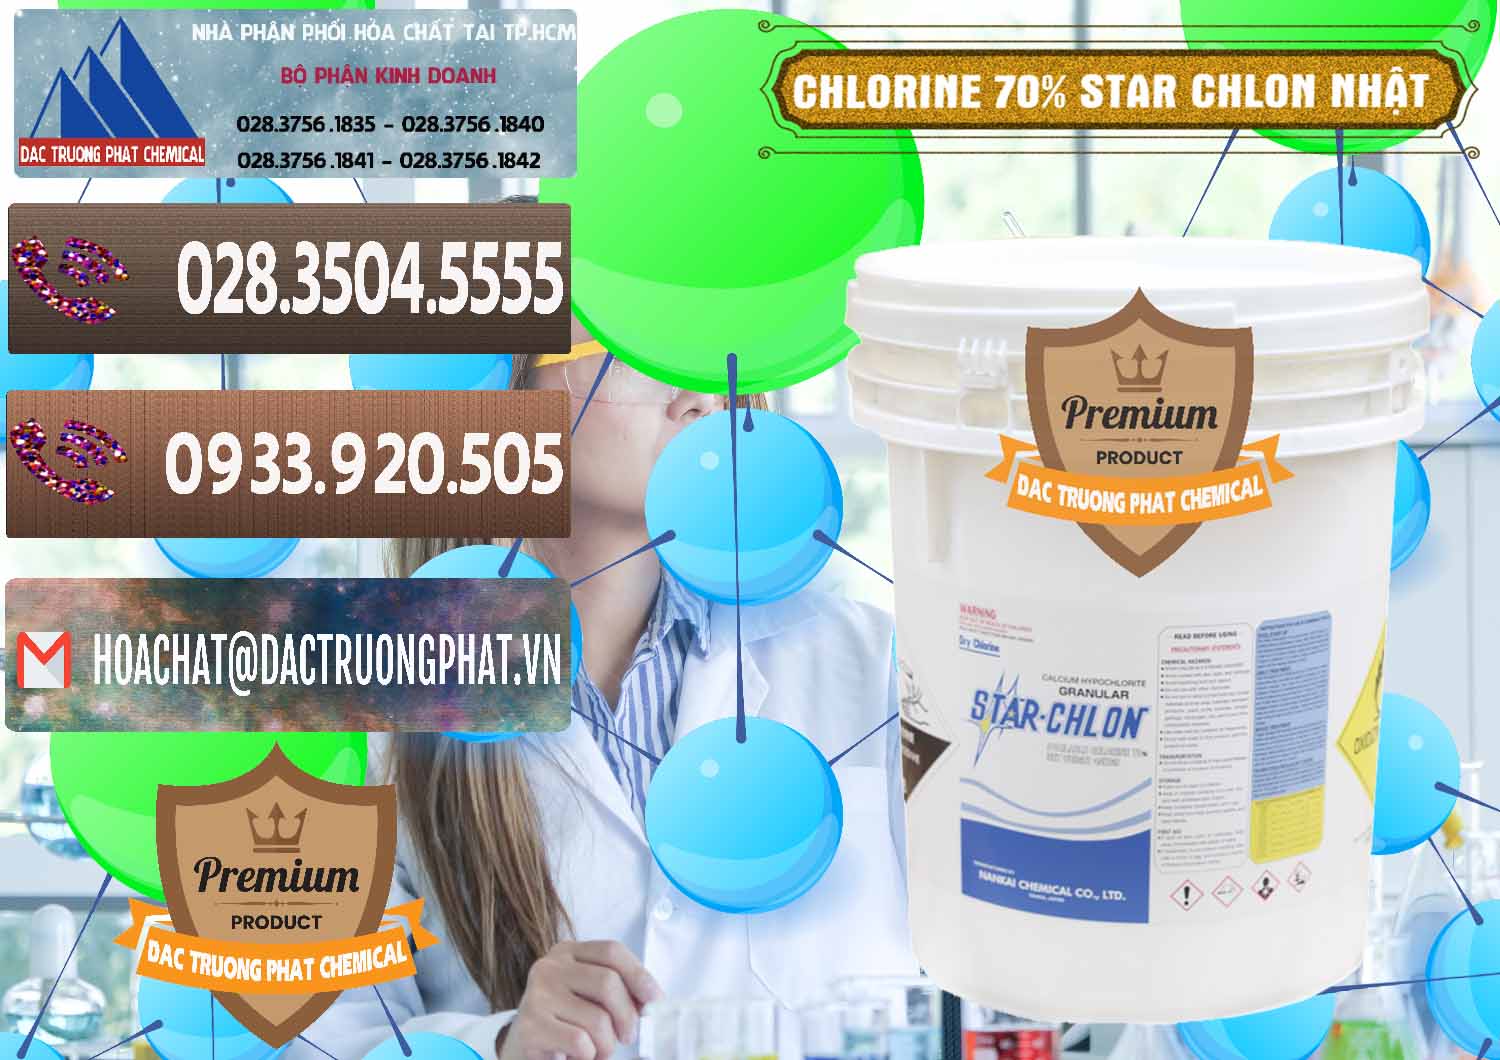 Cty kinh doanh và bán Clorin – Chlorine 70% Star Chlon Nhật Bản Japan - 0243 - Công ty chuyên cung cấp - bán hóa chất tại TP.HCM - hoachatviet.net